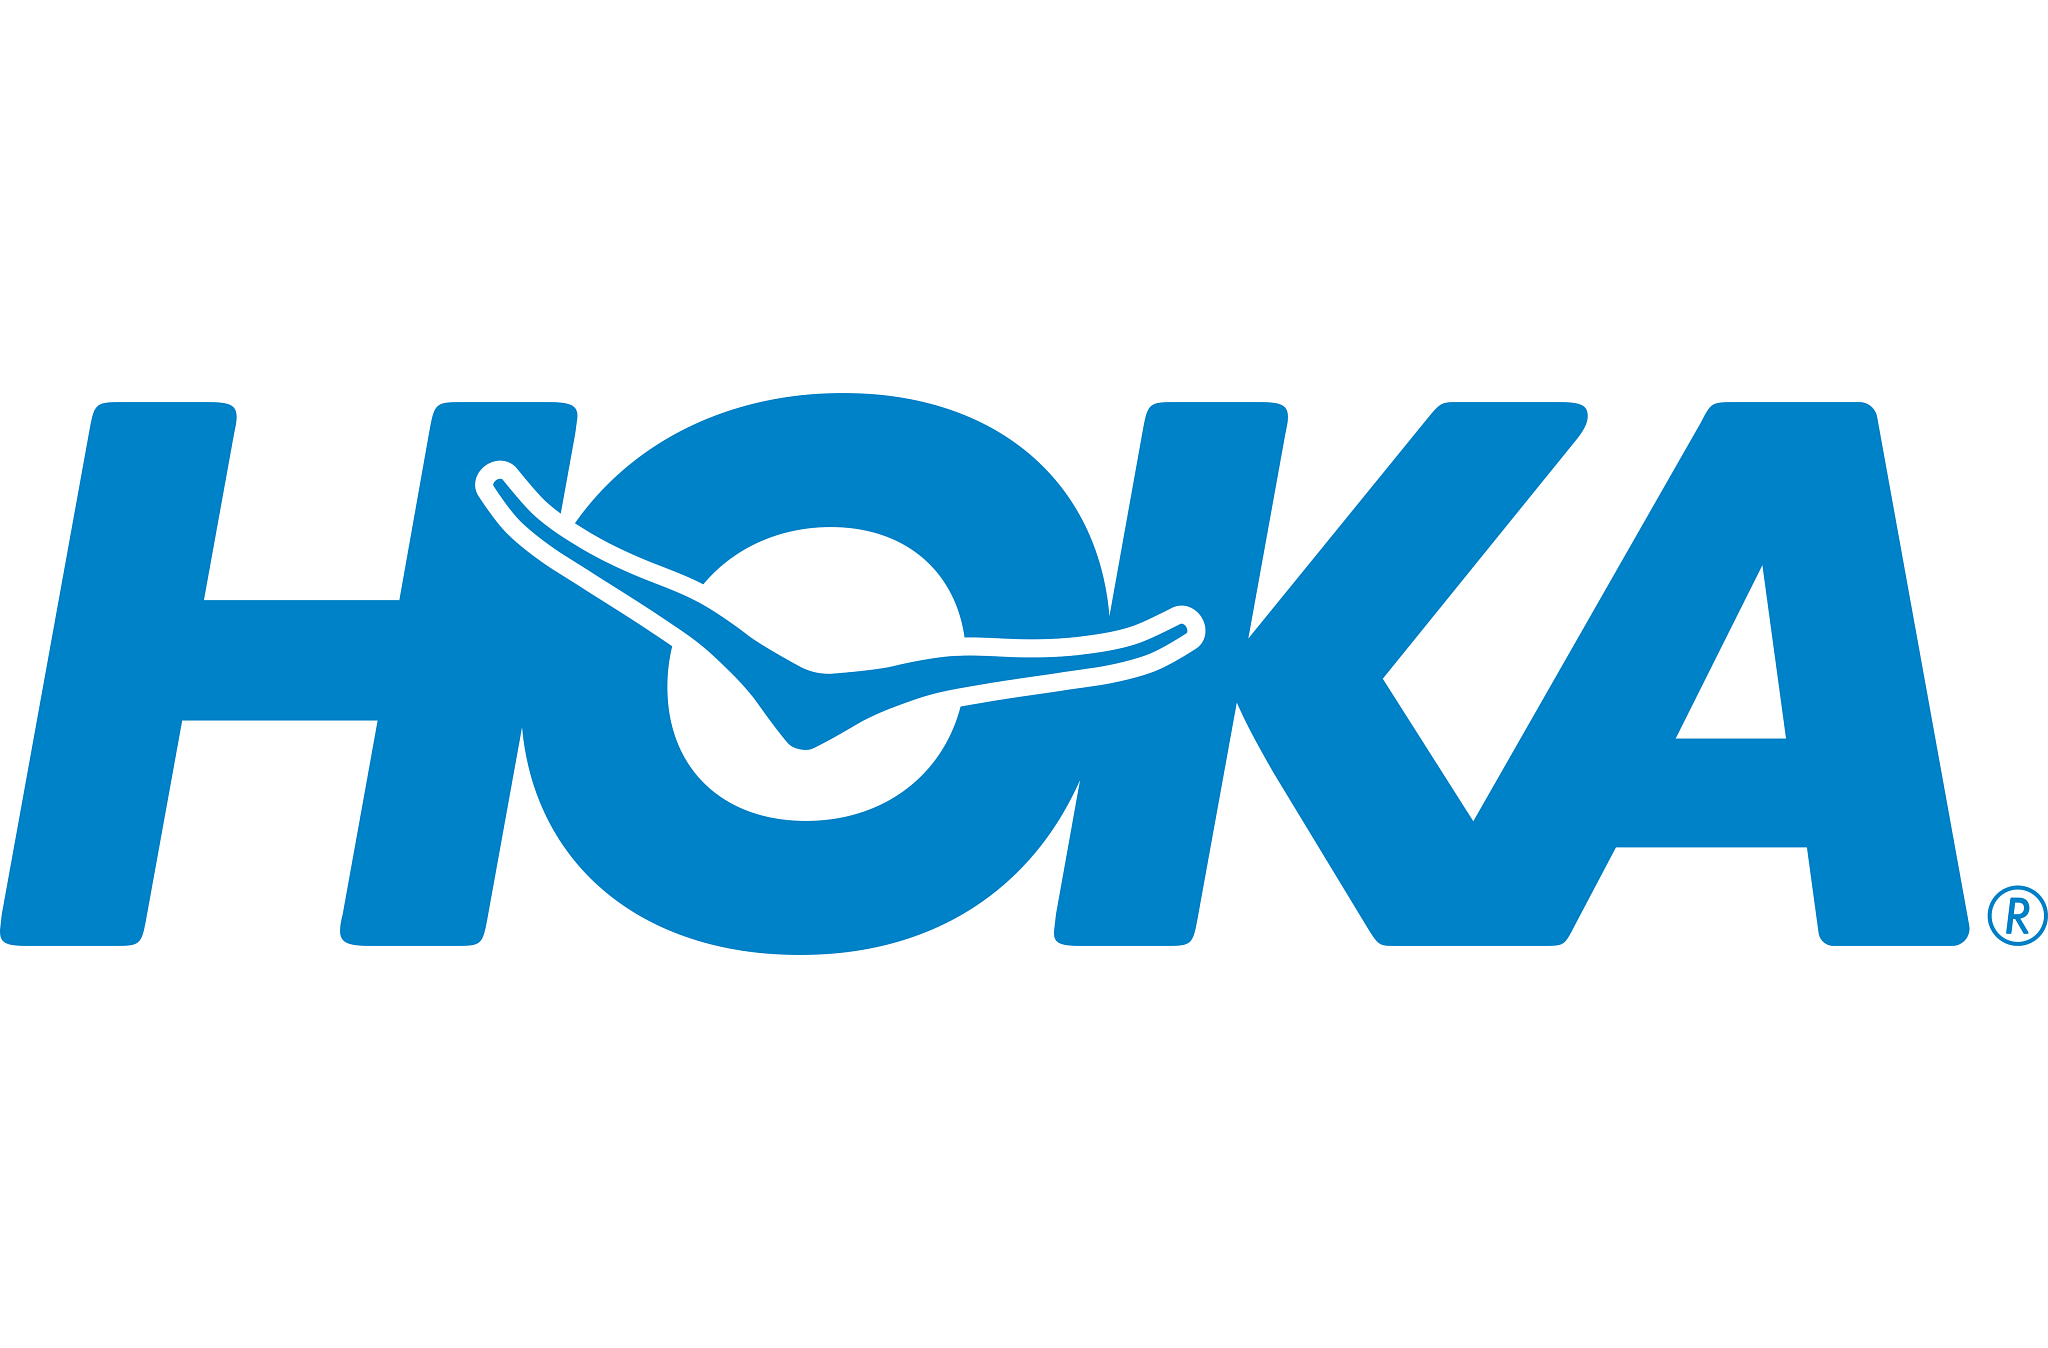 Hoka logo